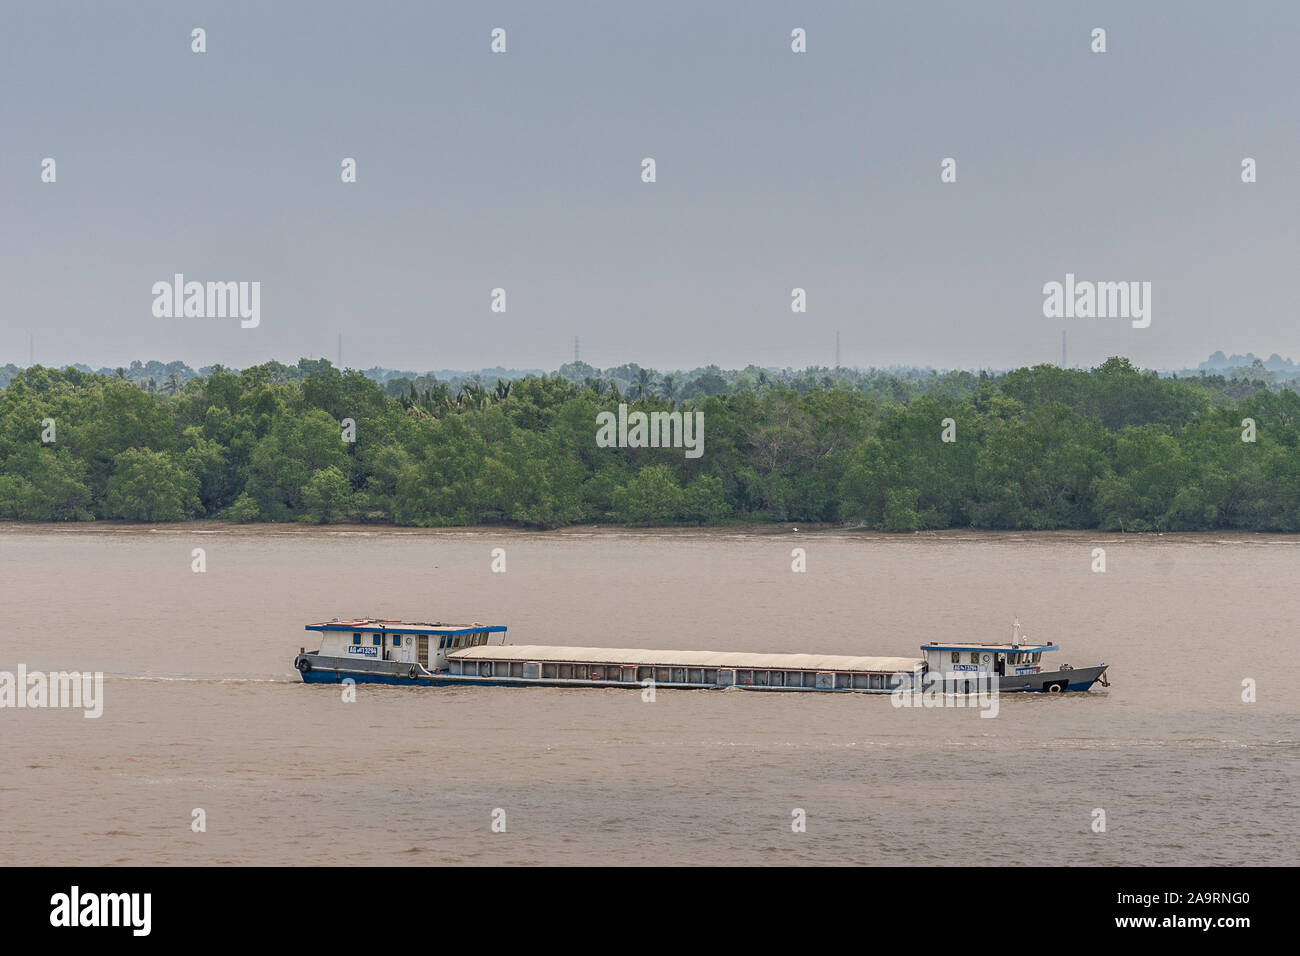 Tau Long River, au Vietnam - 12 mars 2019 : Long hull-fermé river barge voiles sur l'eau brune et se trouve profondément. Ceinture verte se détache du fond de ciel bleu. Banque D'Images